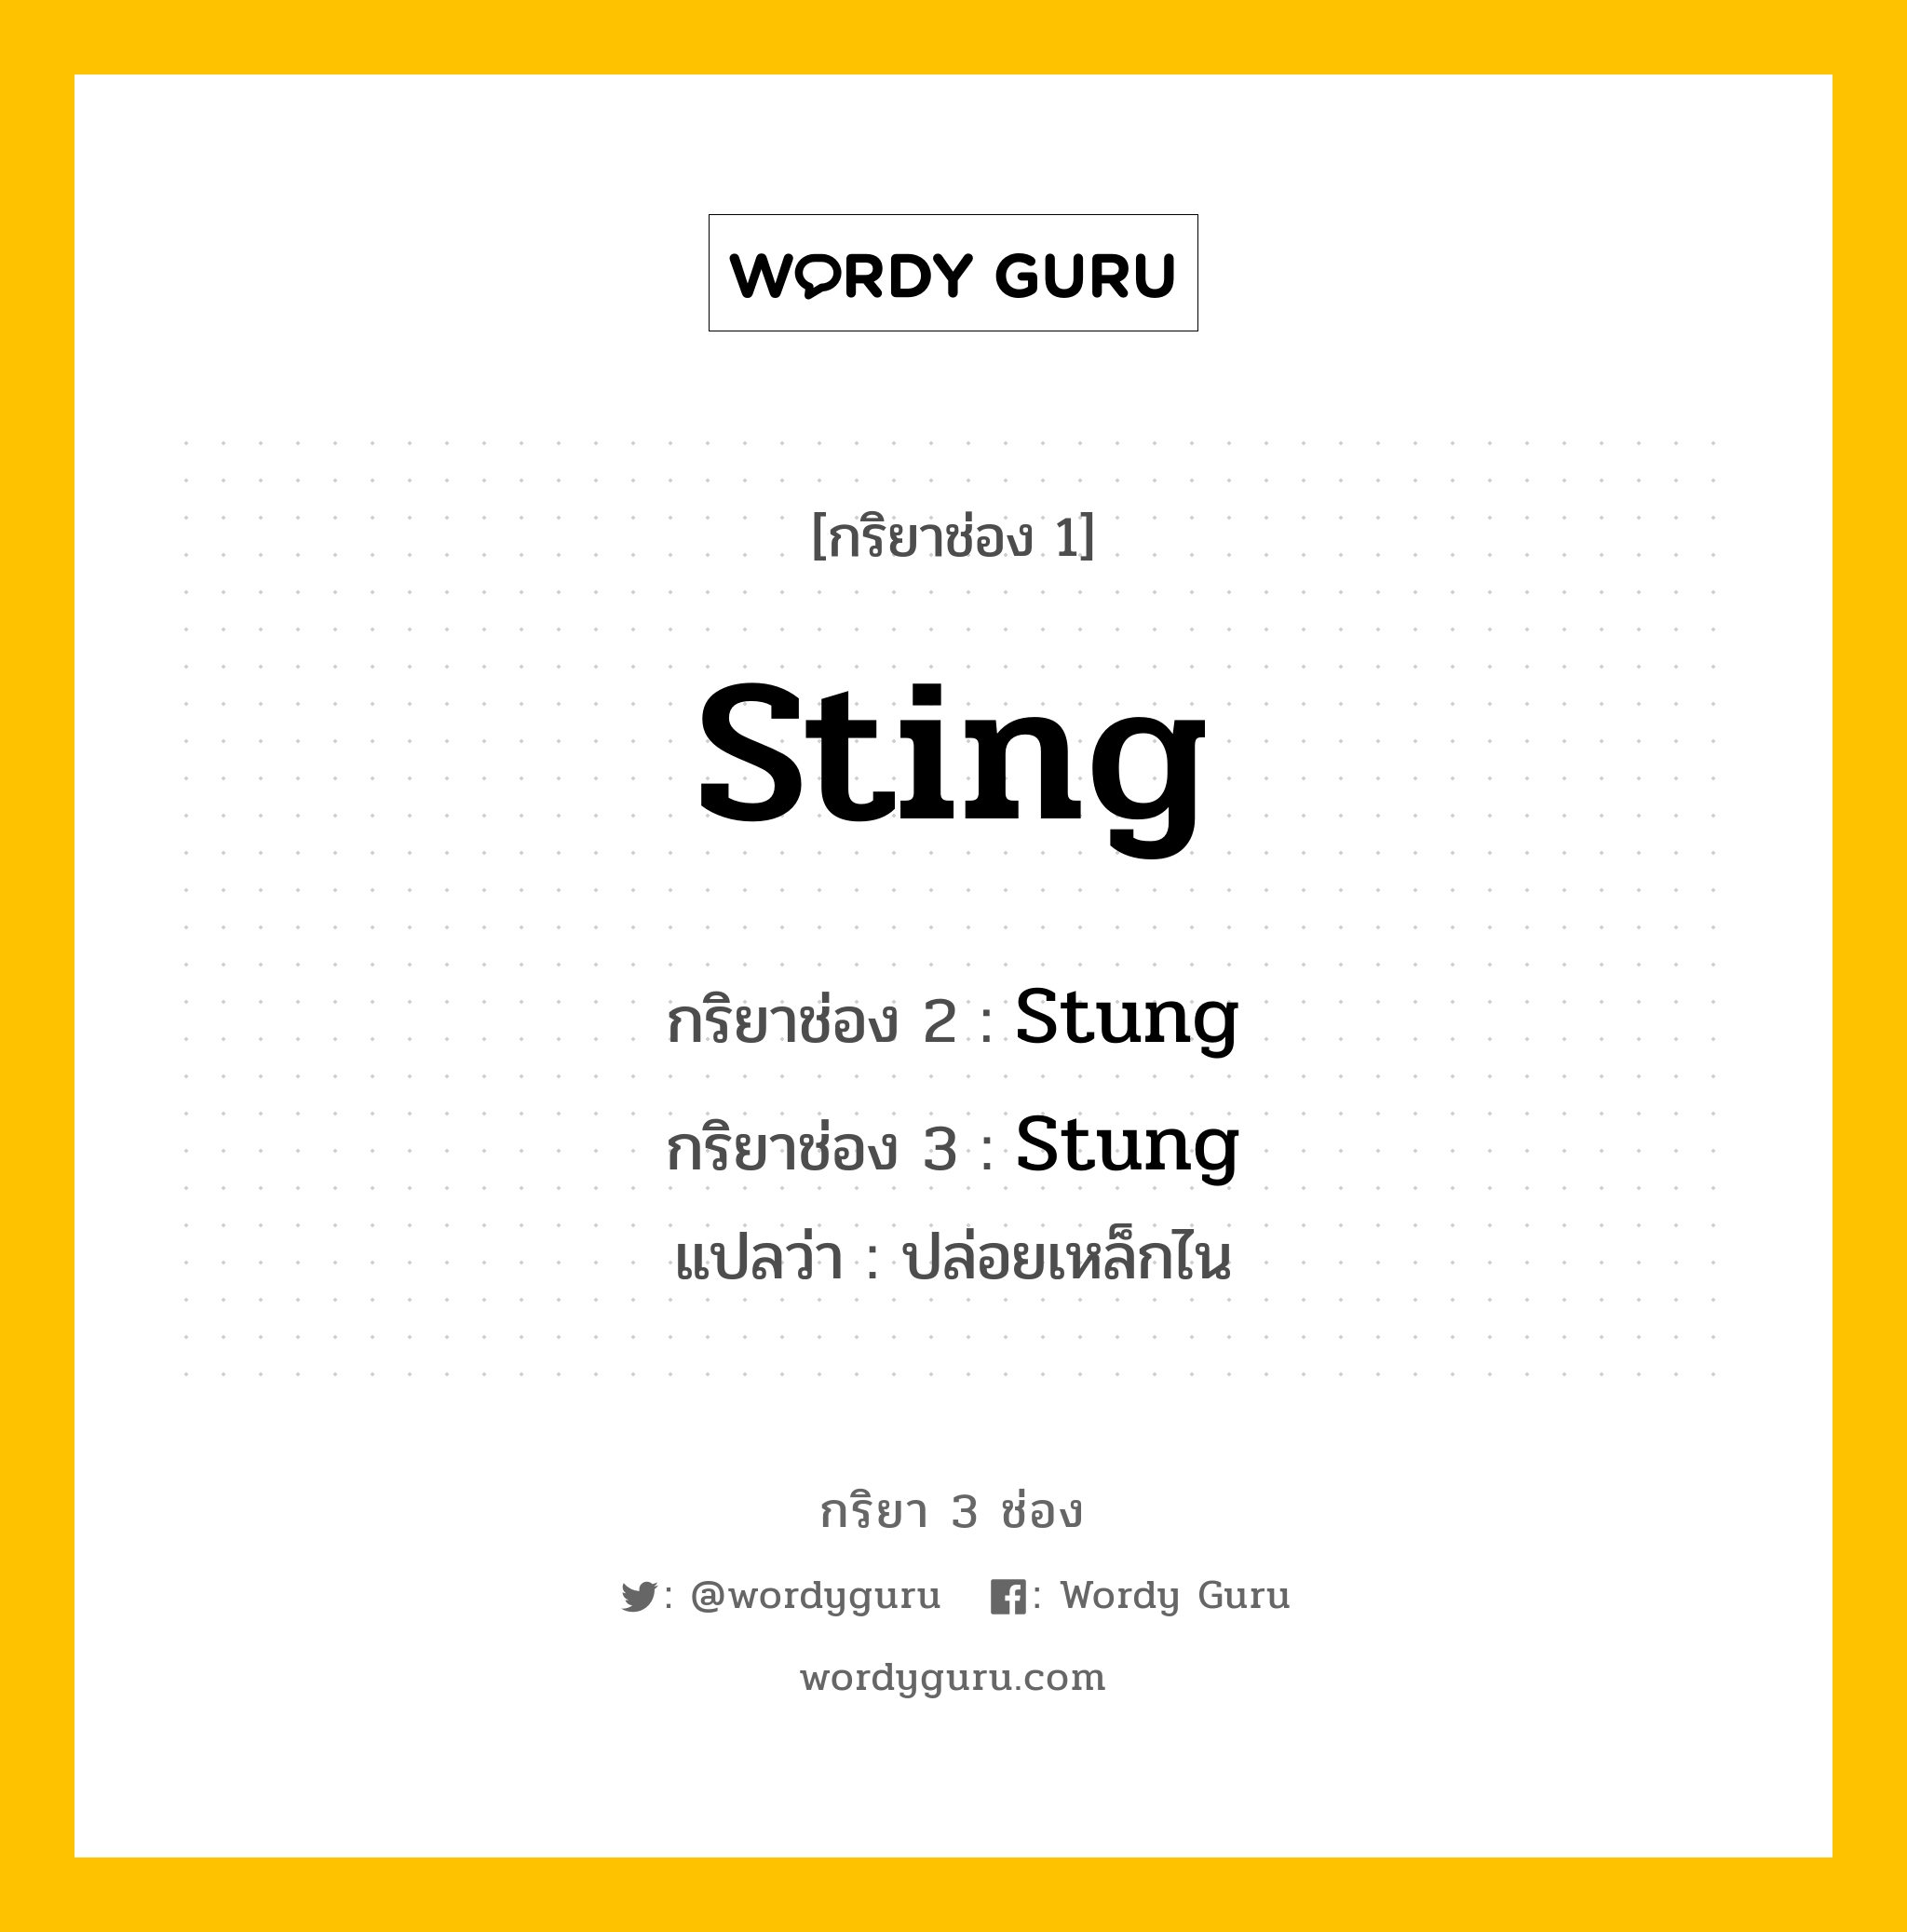 กริยา 3 ช่อง ของ Sting คืออะไร?, กริยาช่อง 1 Sting กริยาช่อง 2 Stung กริยาช่อง 3 Stung แปลว่า ปล่อยเหล็กไน หมวด Irregular Verb หมวด Irregular Verb